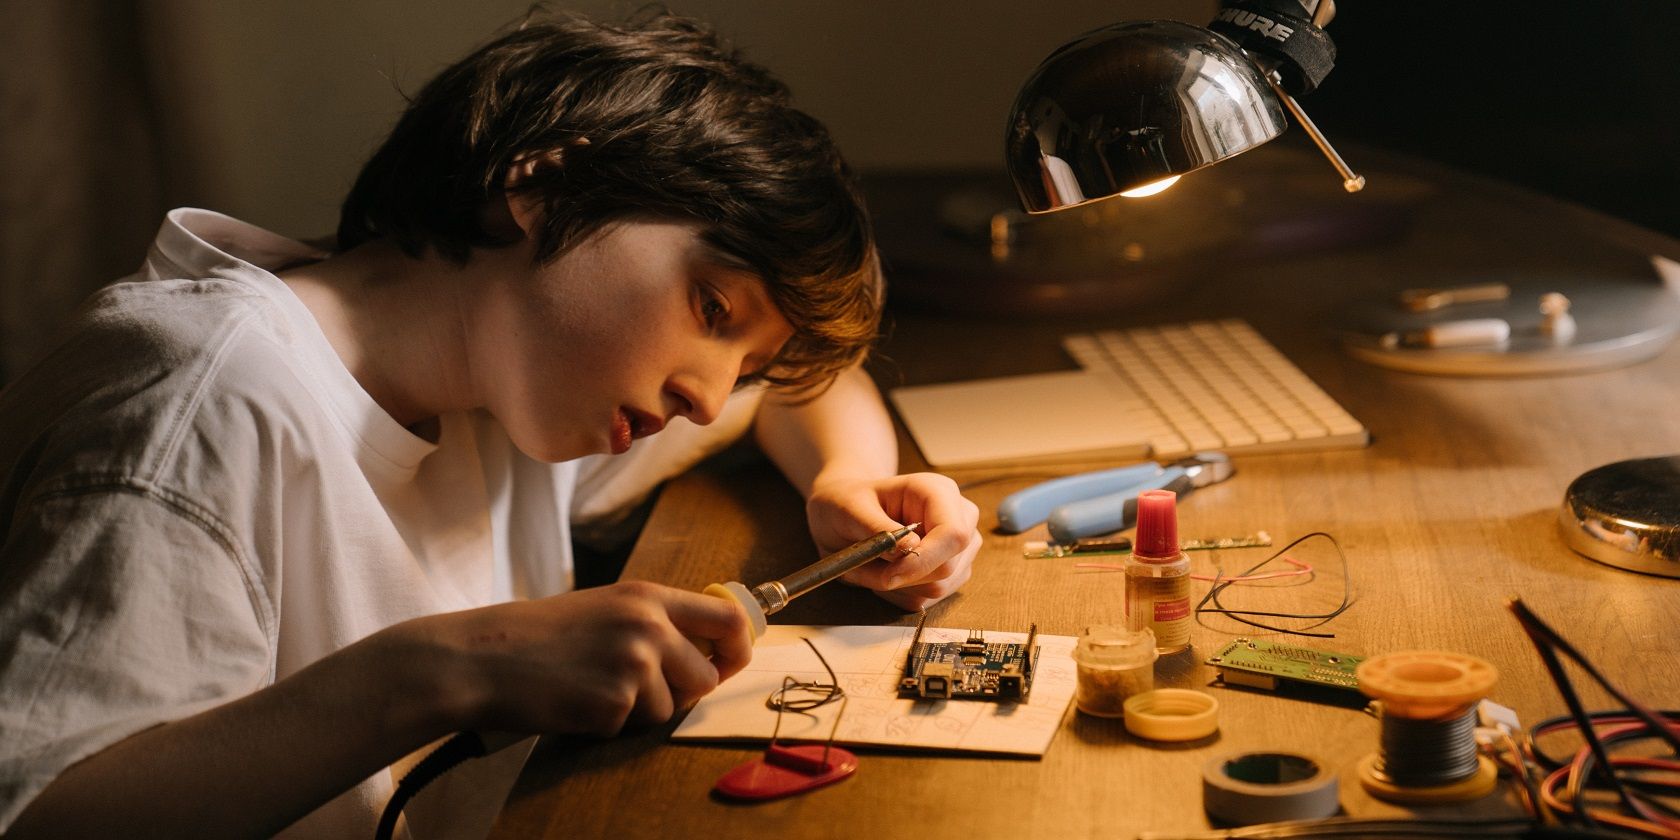 A girl in white short sleeve shirt soldering